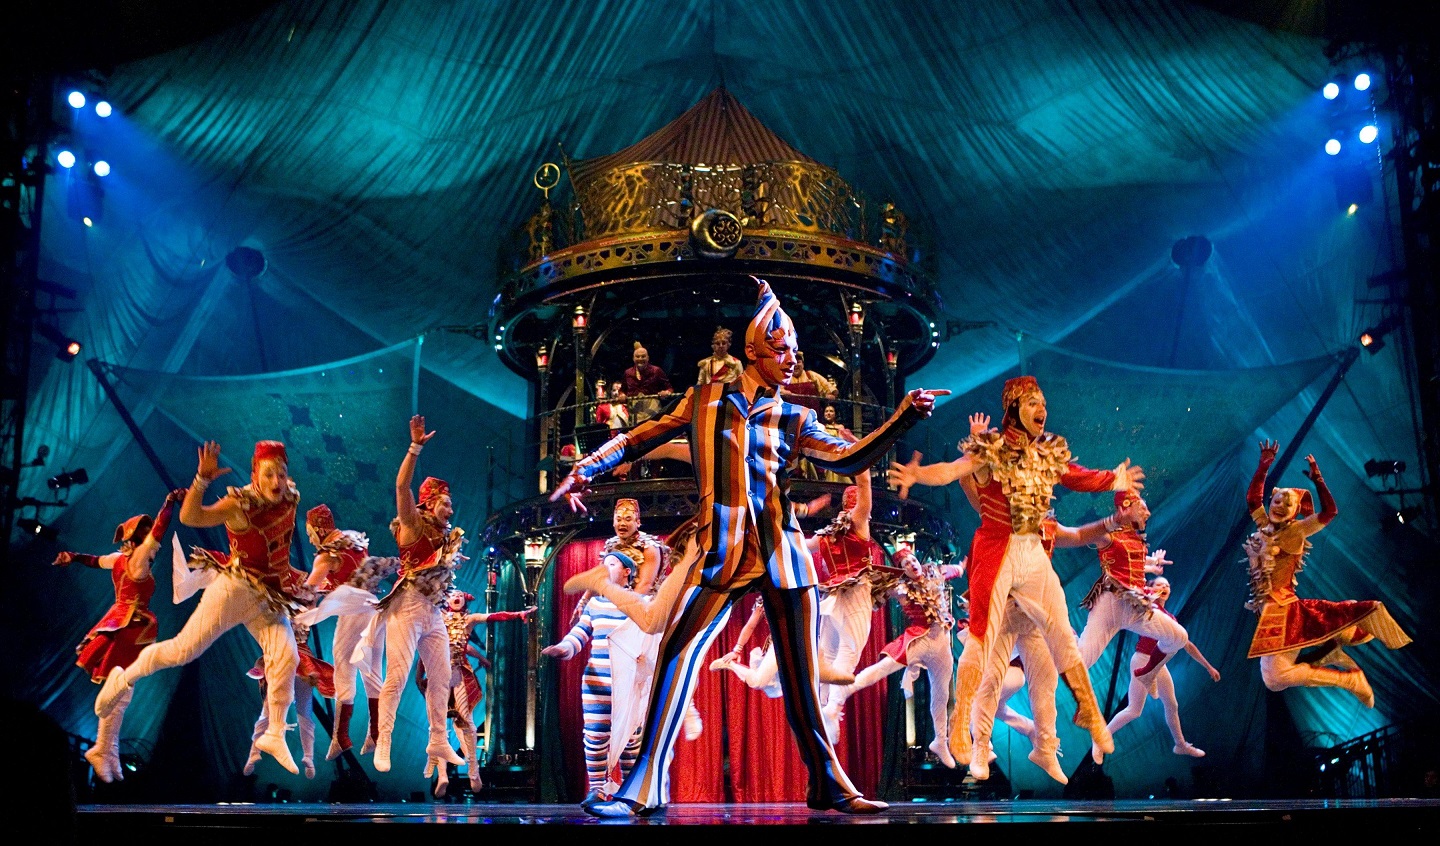 Артистам Cirque du Soleil не разрешили шествие в Петербурге